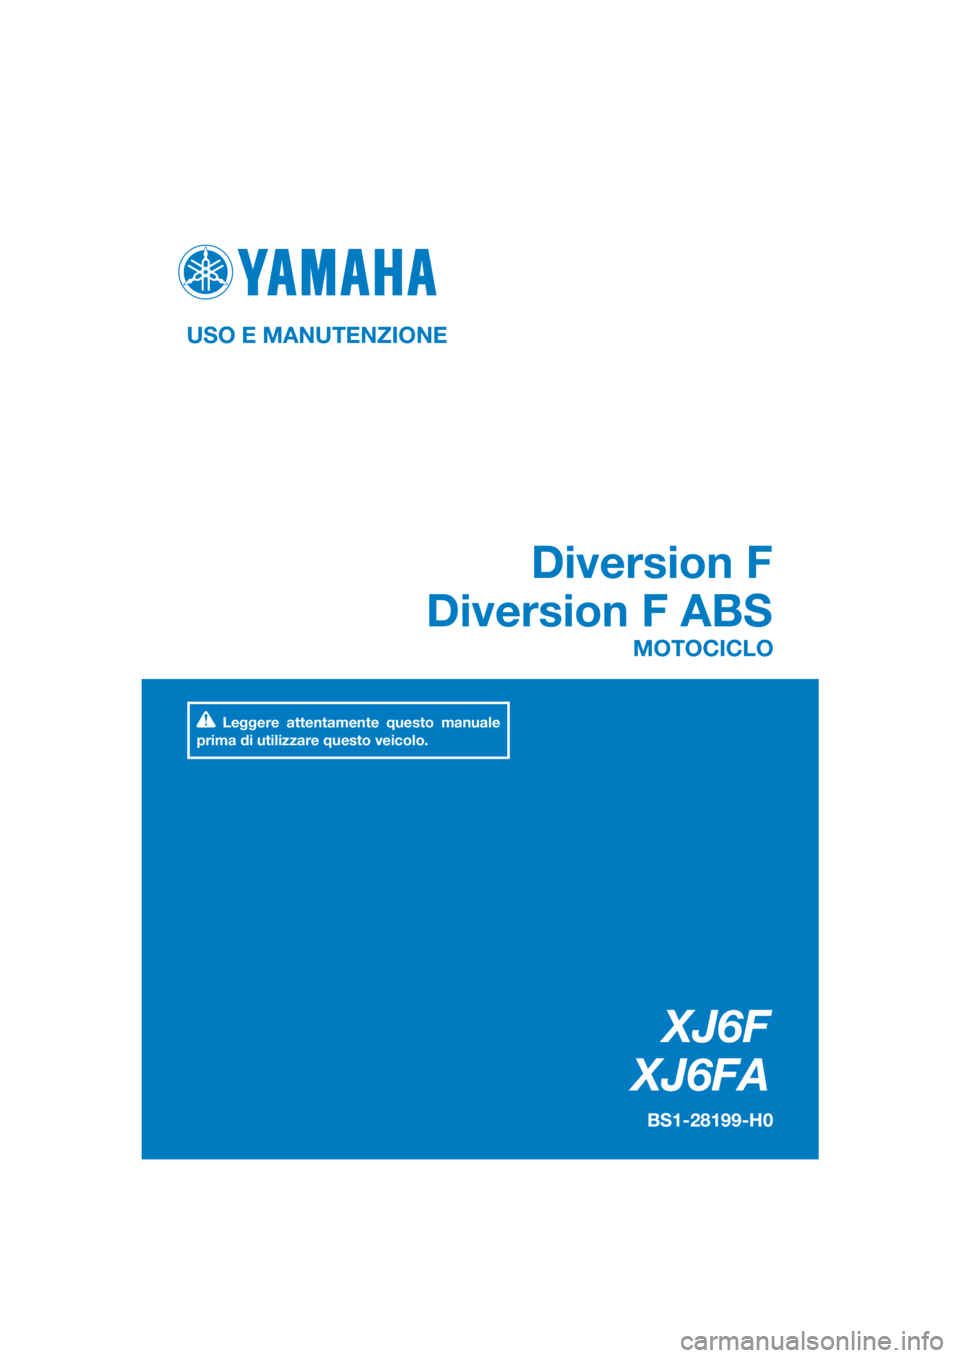 YAMAHA XJ6F 2016  Manuale duso (in Italian) DIC183
XJ6F
XJ6FA
Diversion F
Diversion F ABS
USO E MANUTENZIONE
BS1-28199-H0
MOTOCICLO
Leggere attentamente questo manuale 
prima di utilizzare questo veicolo.
[Italian  (H)] 